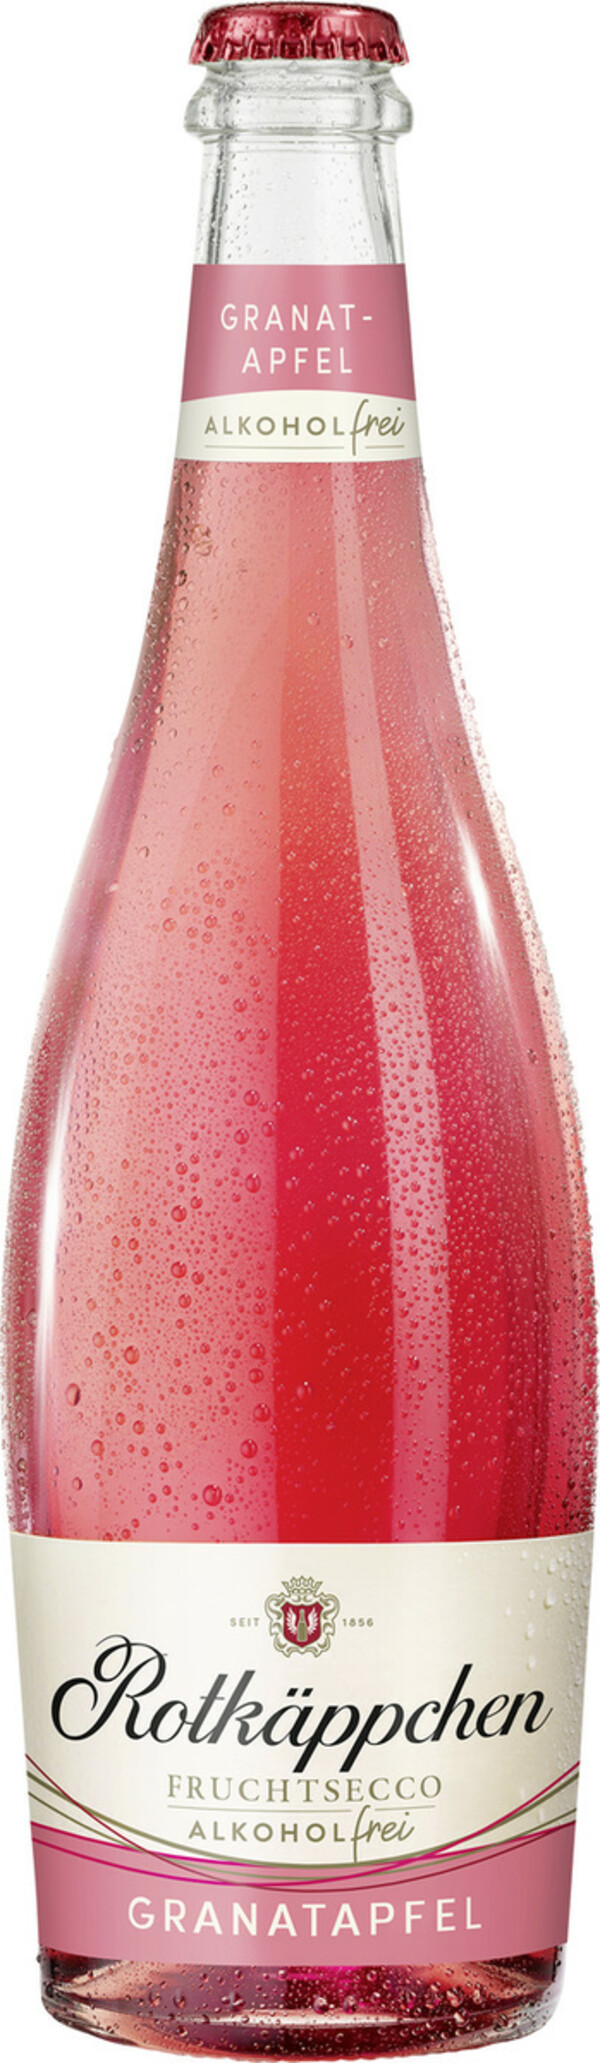 Bild 1 von Rotkäppchen Fruchtsecco Granatapfel Alkoholfrei 0,75L